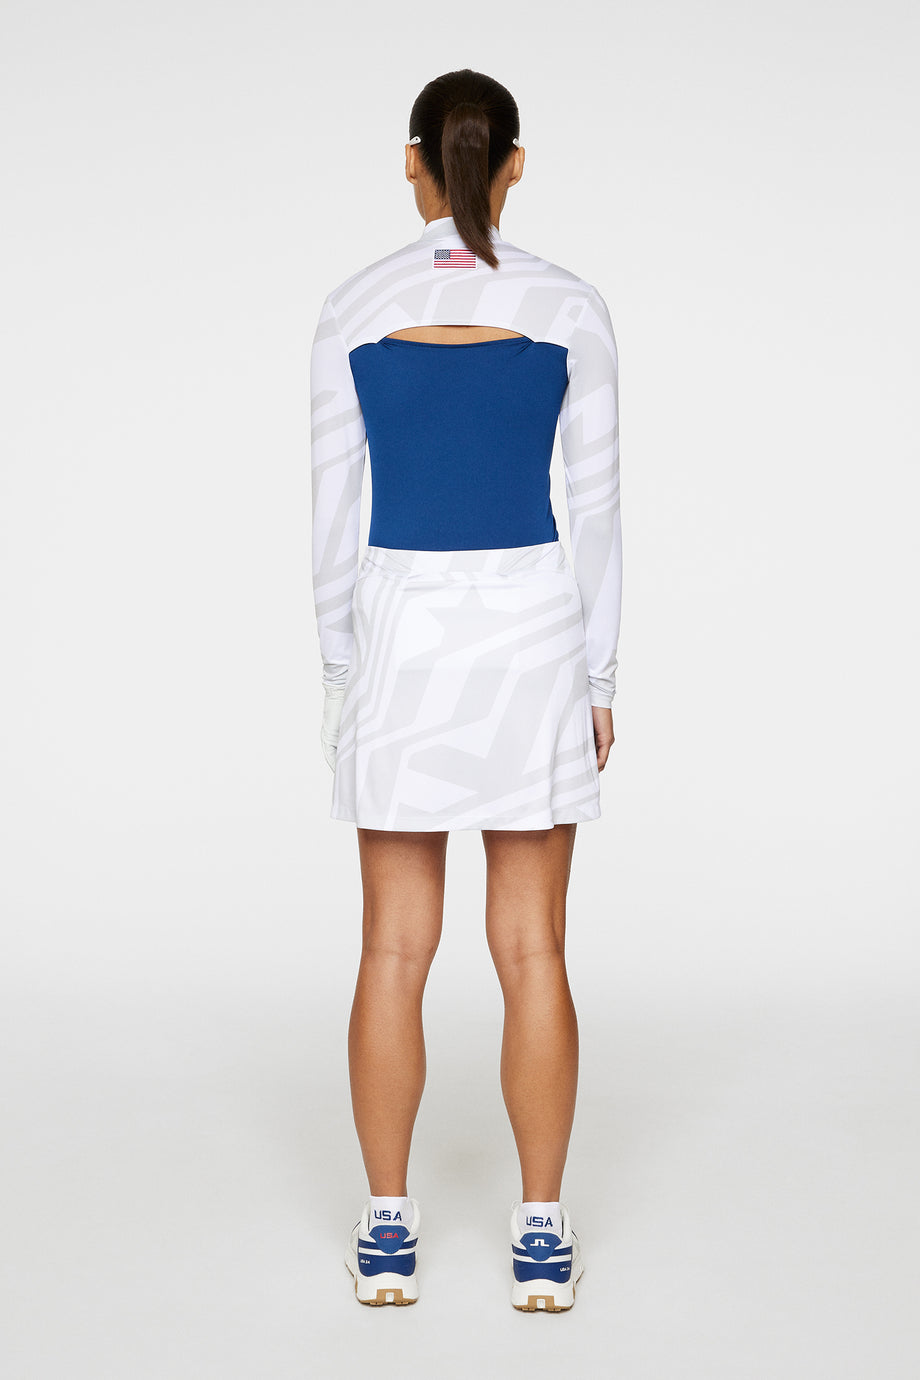 Gisele Skirt Print / US Golf White